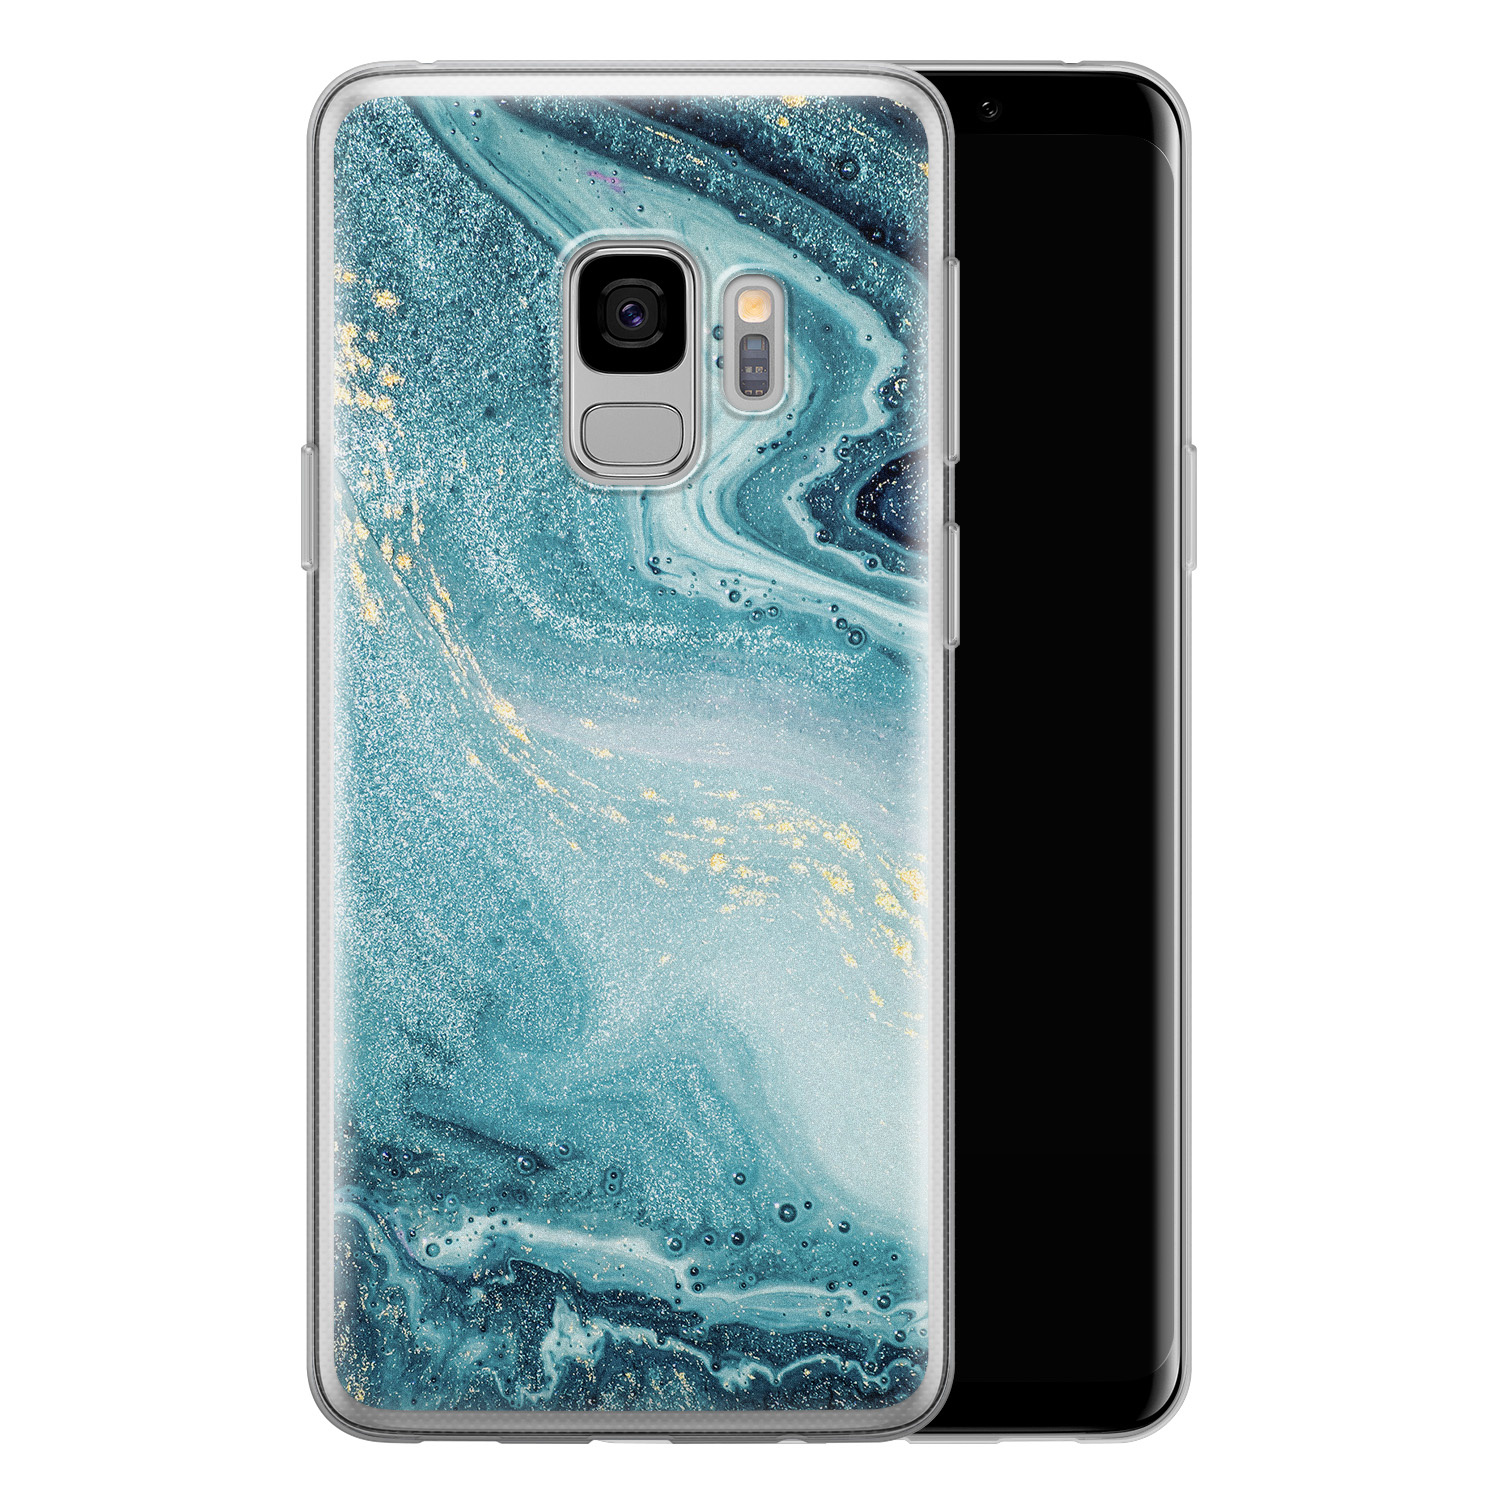 Leuke Telefoonhoesjes Samsung Galaxy S9 siliconen hoesje - Marmer blauw